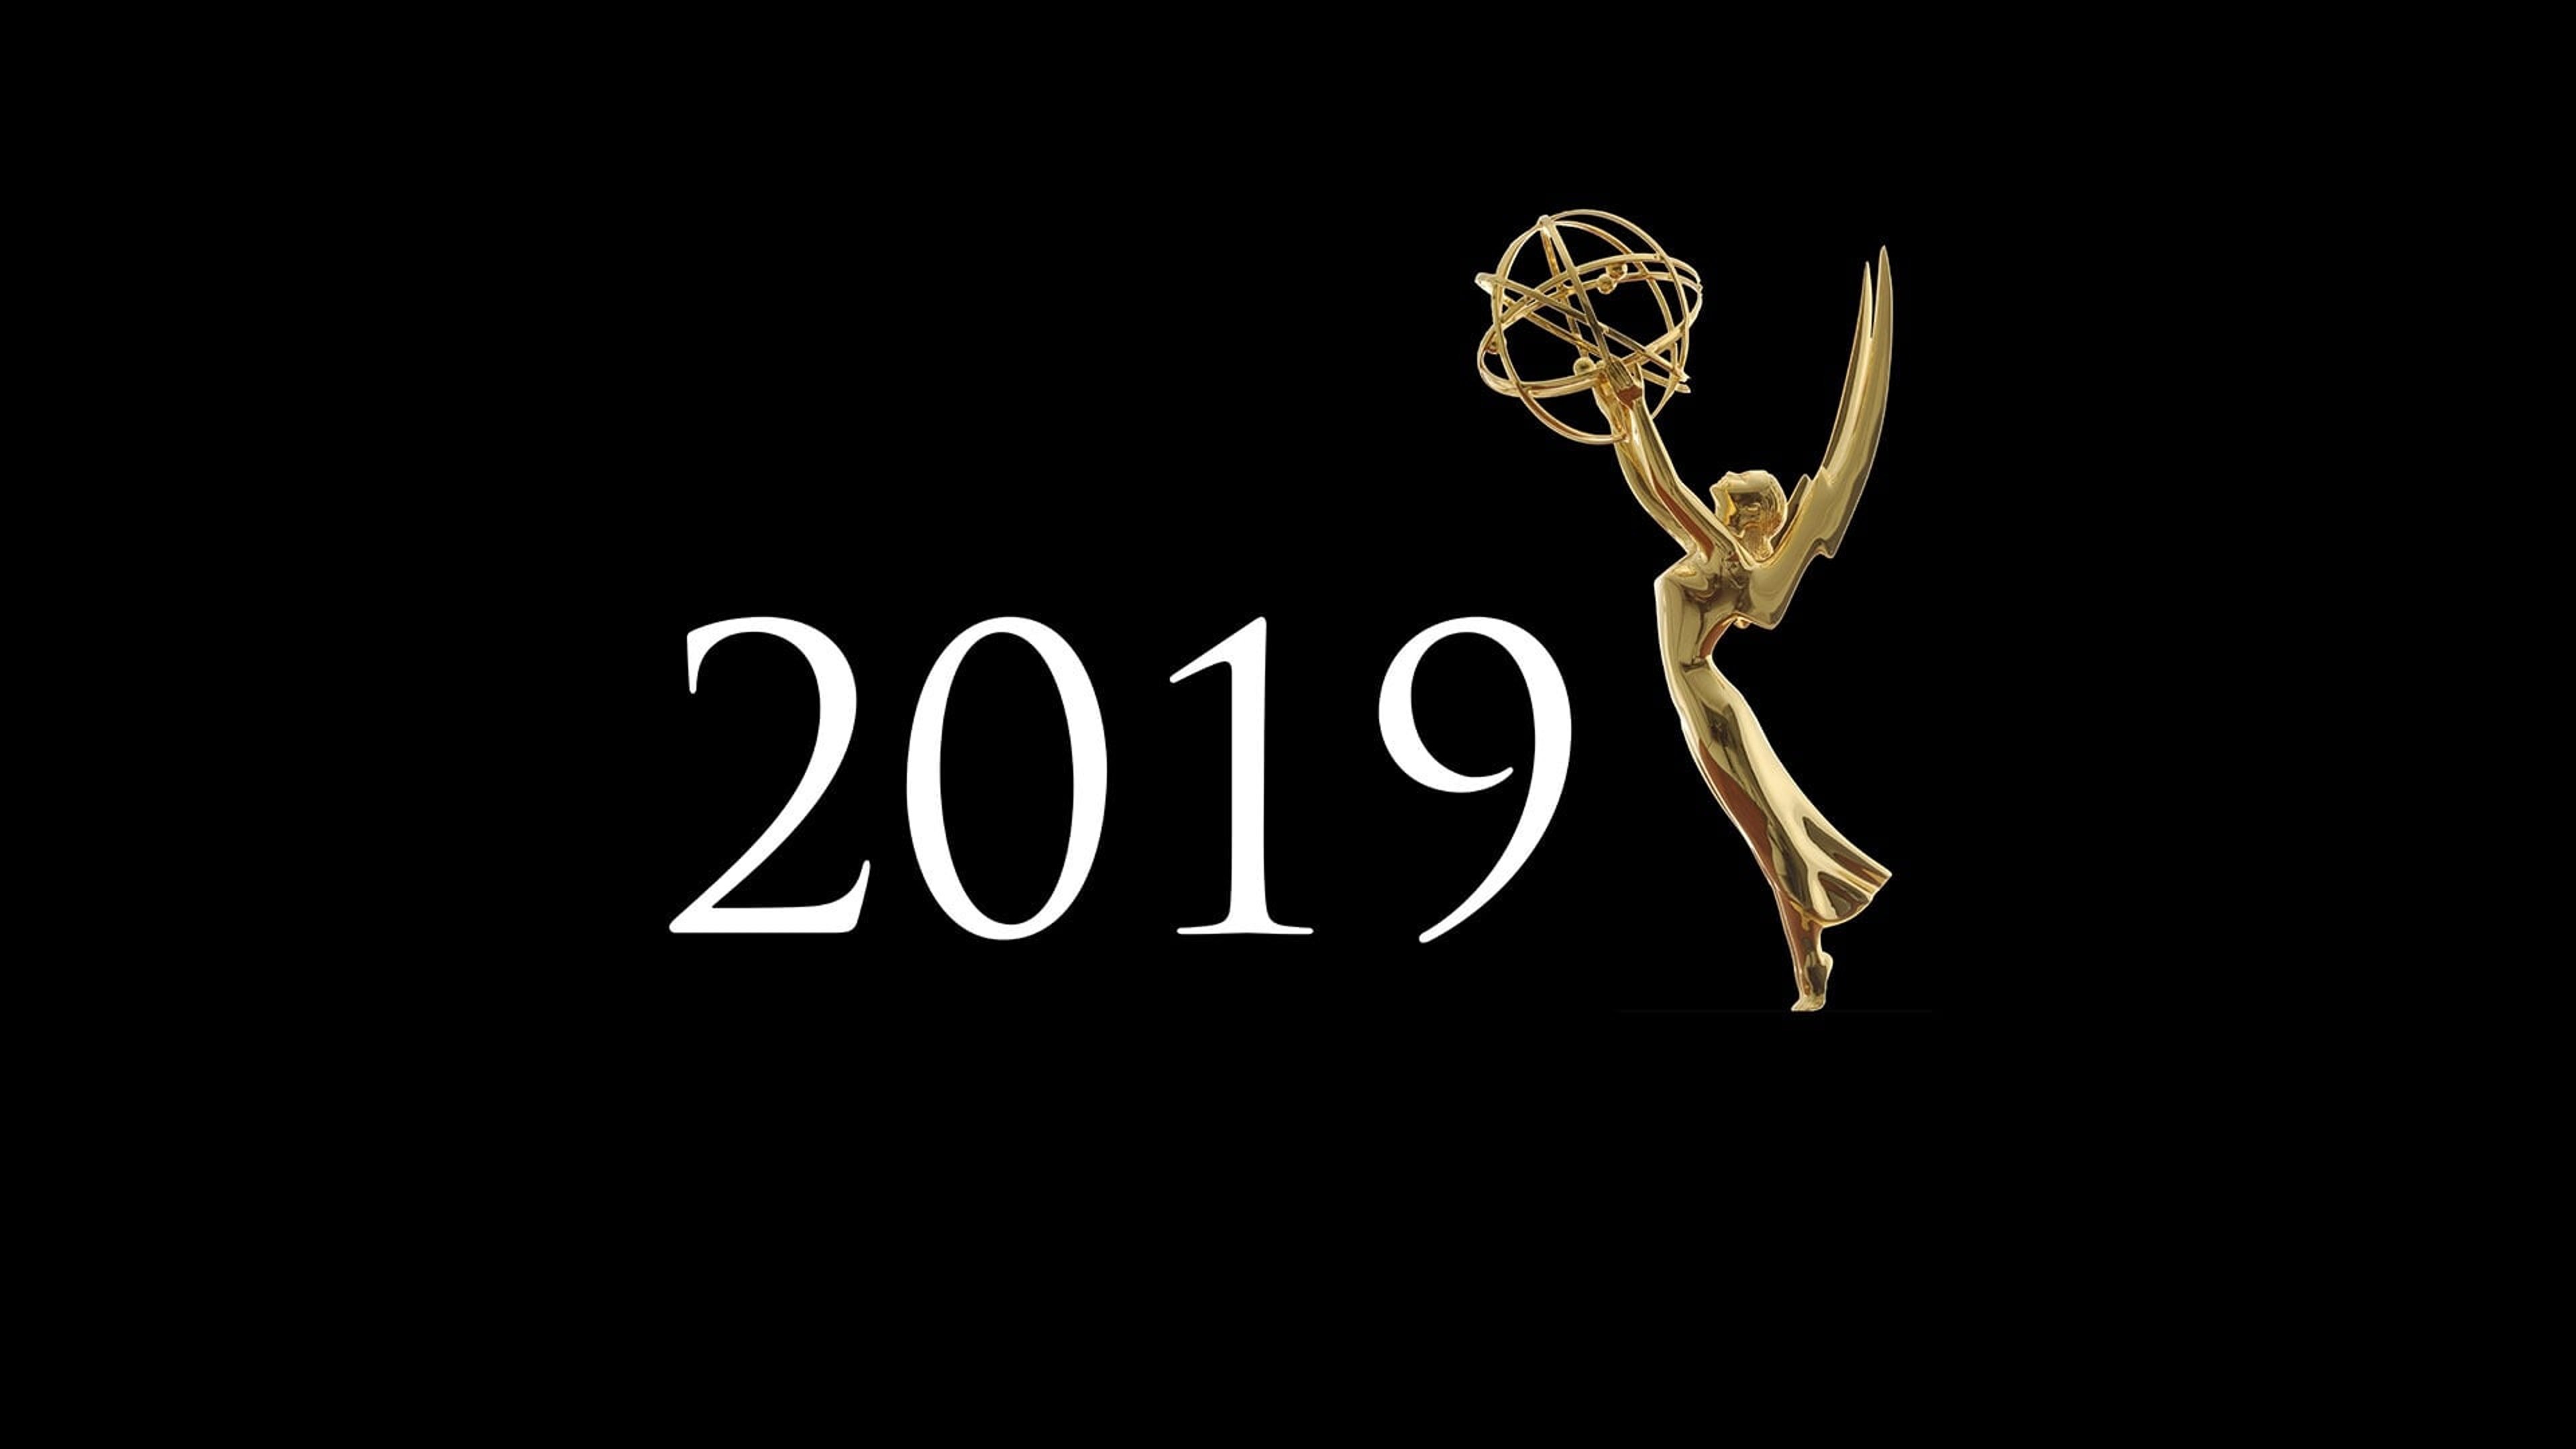 Dati e nomination dei Primetime Emmy Awards 2019